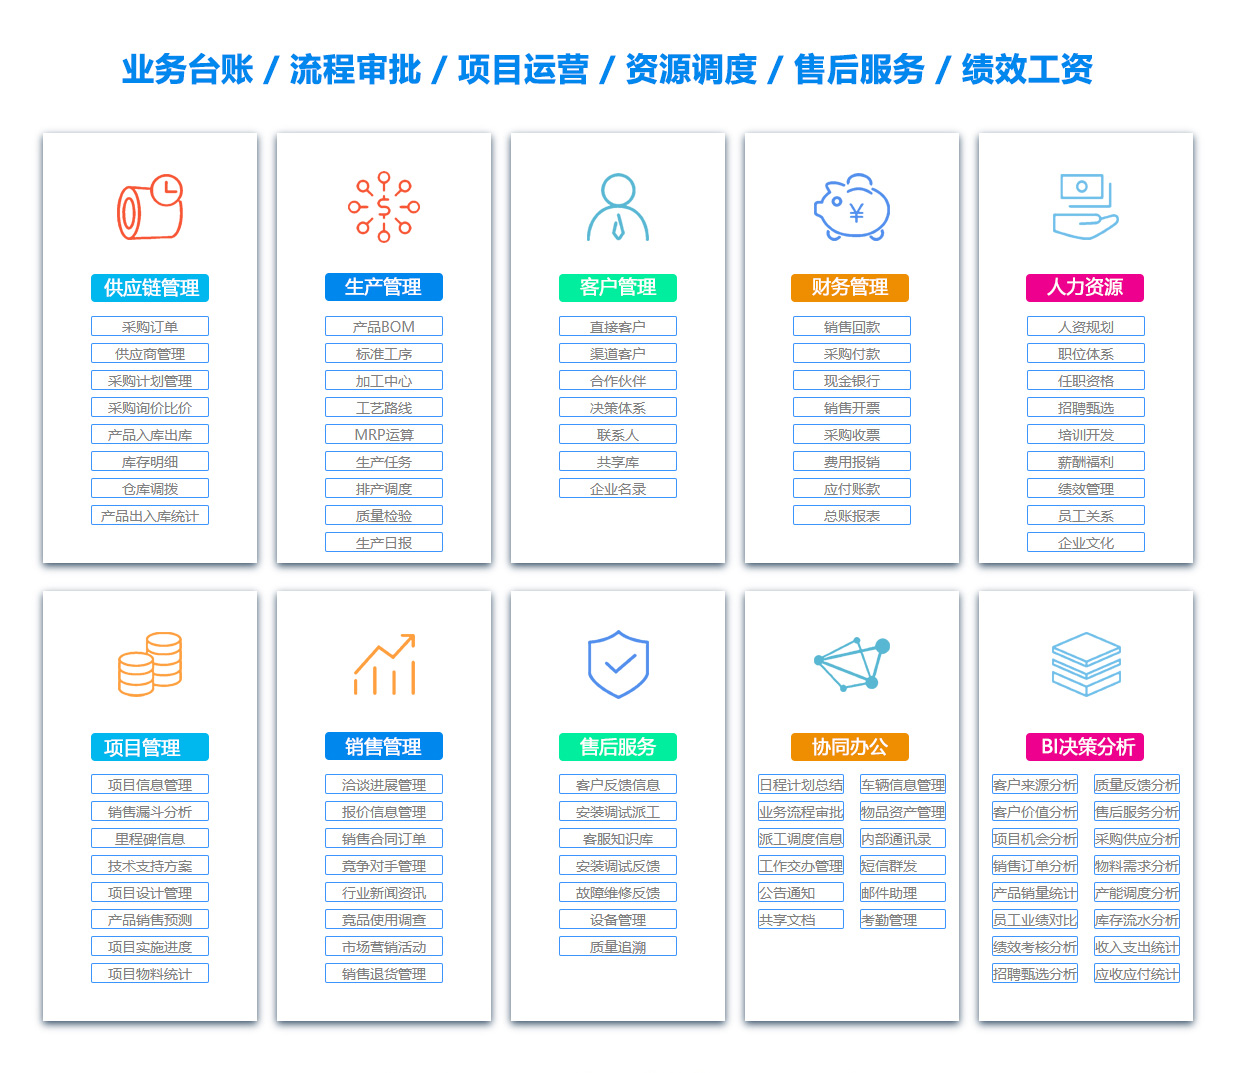 桂林SCM:供应链管理系统